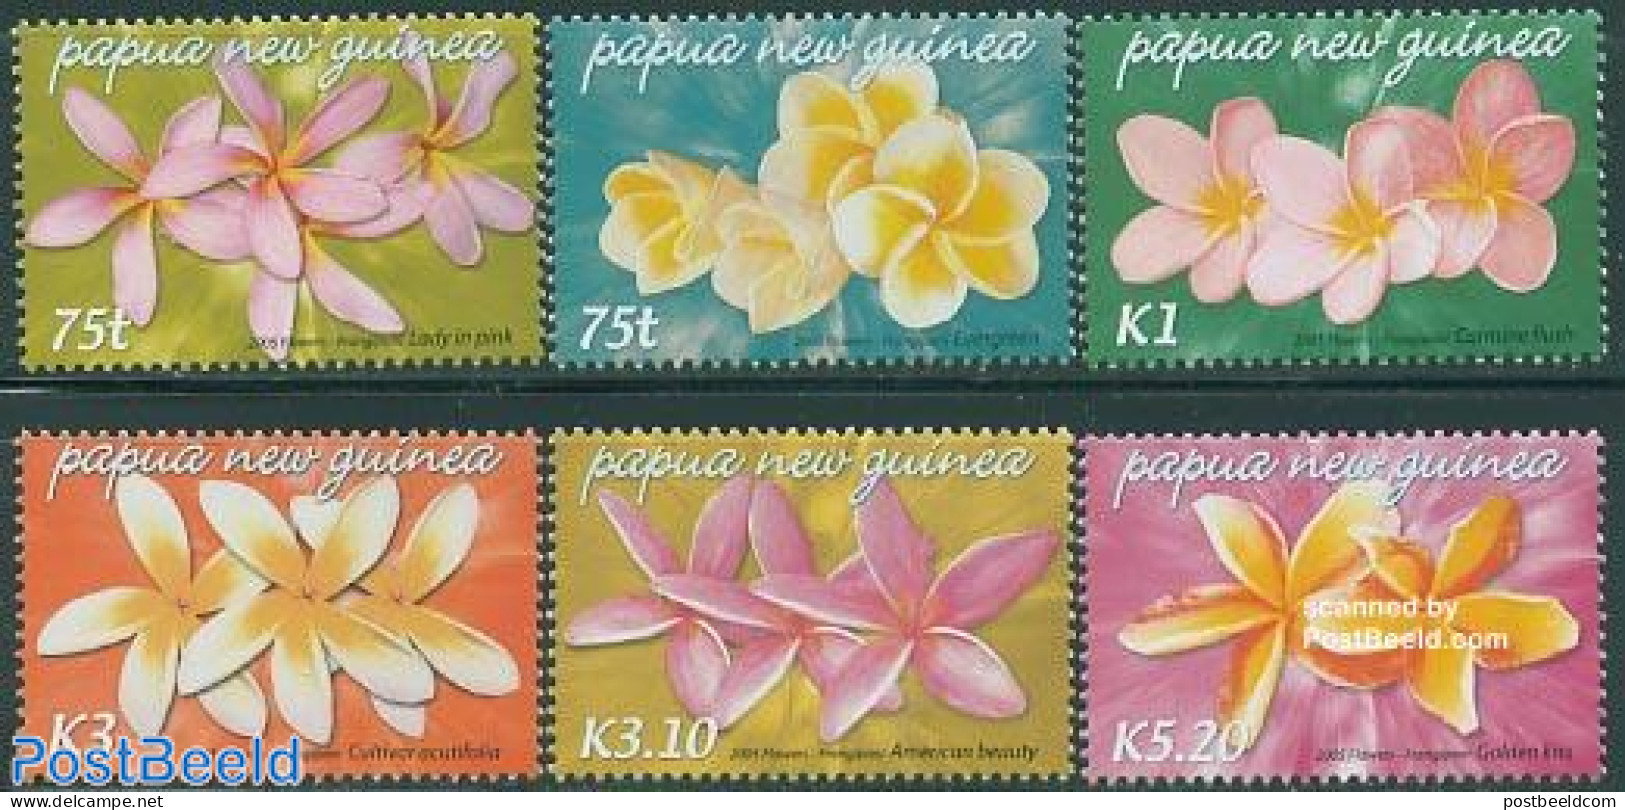 Papua New Guinea 2005 Flowers 6v, Mint NH, Nature - Flowers & Plants - Papouasie-Nouvelle-Guinée